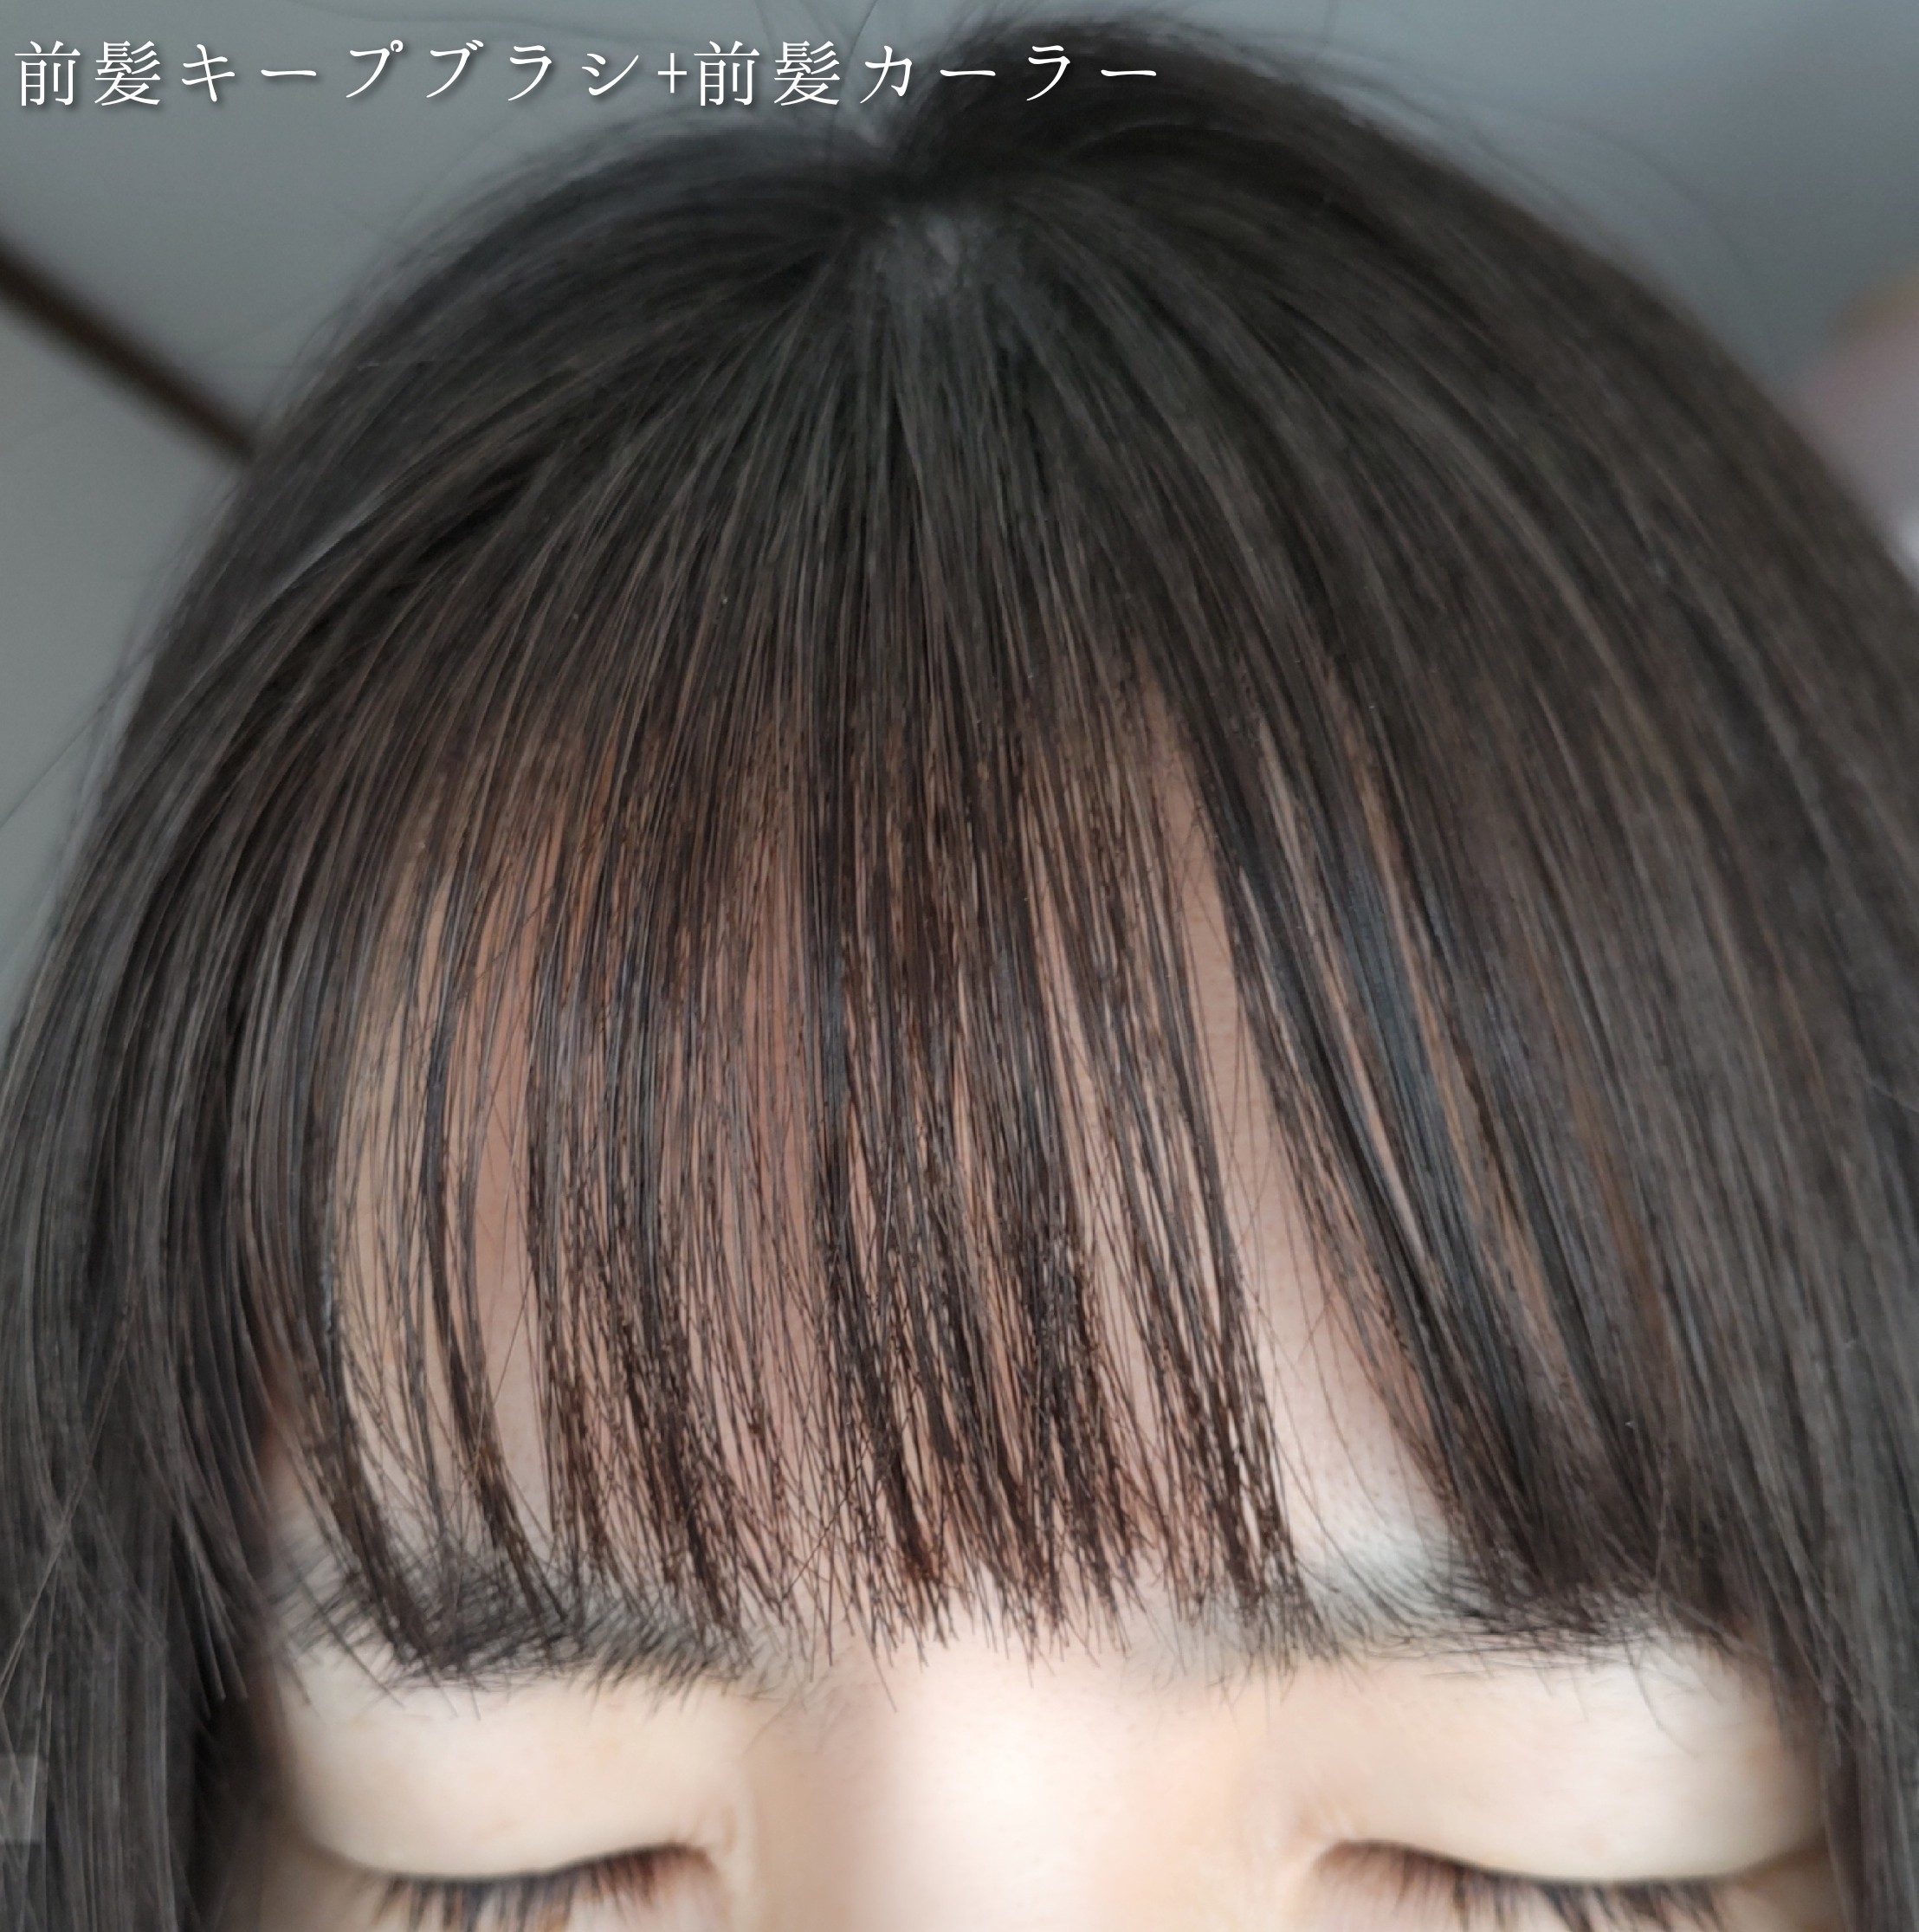 DAISO 前髪キープブラシ DAを使ったYuKaRi♡さんのクチコミ画像8